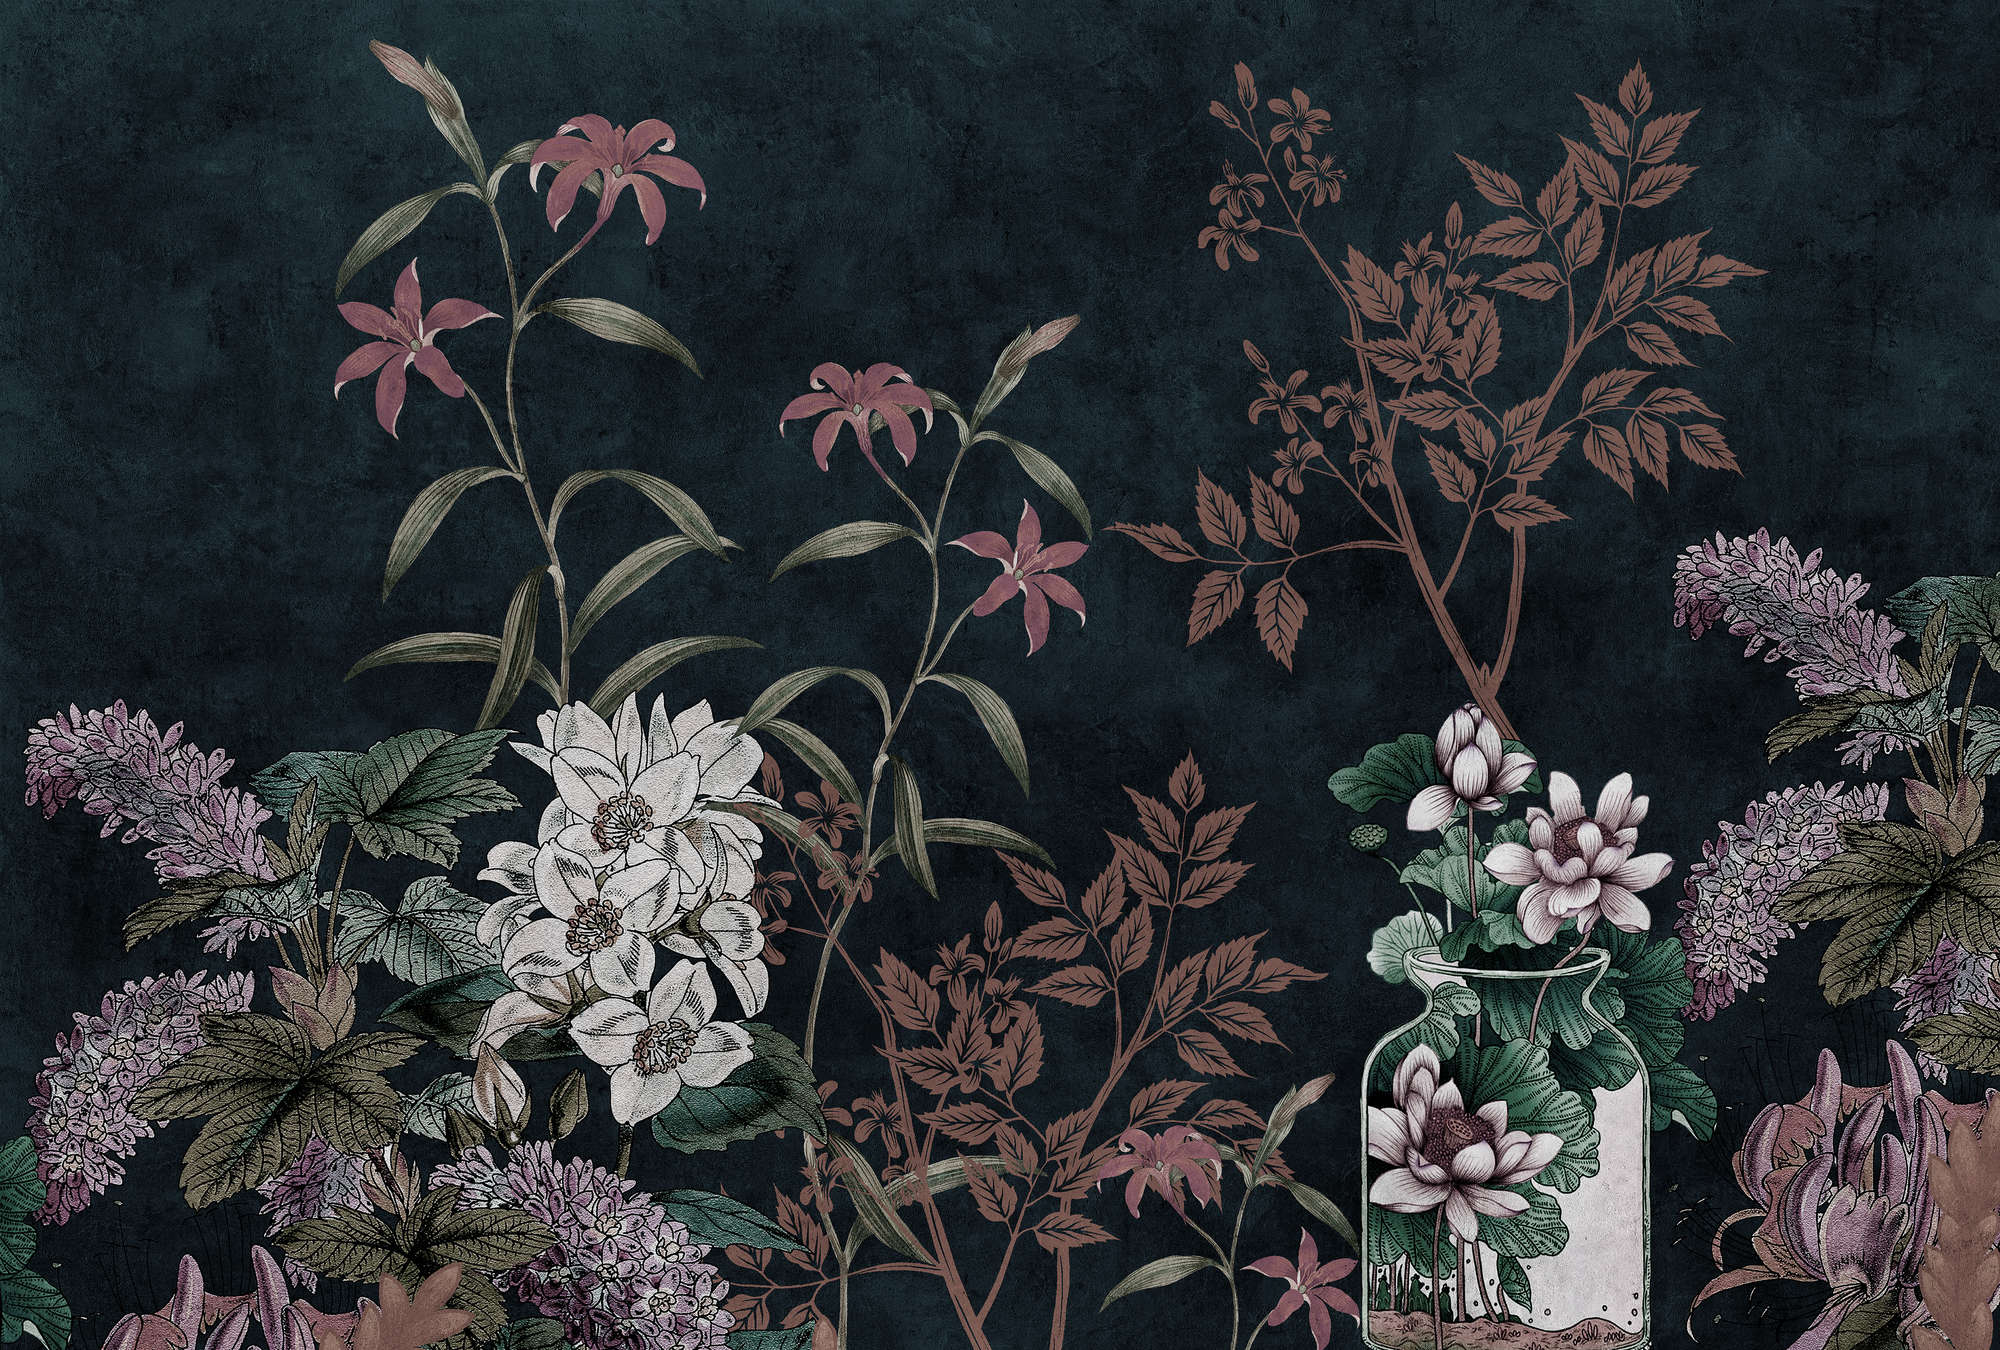             Dark Room 2 - Zwart Behang Botanisch Patroon Roze
        